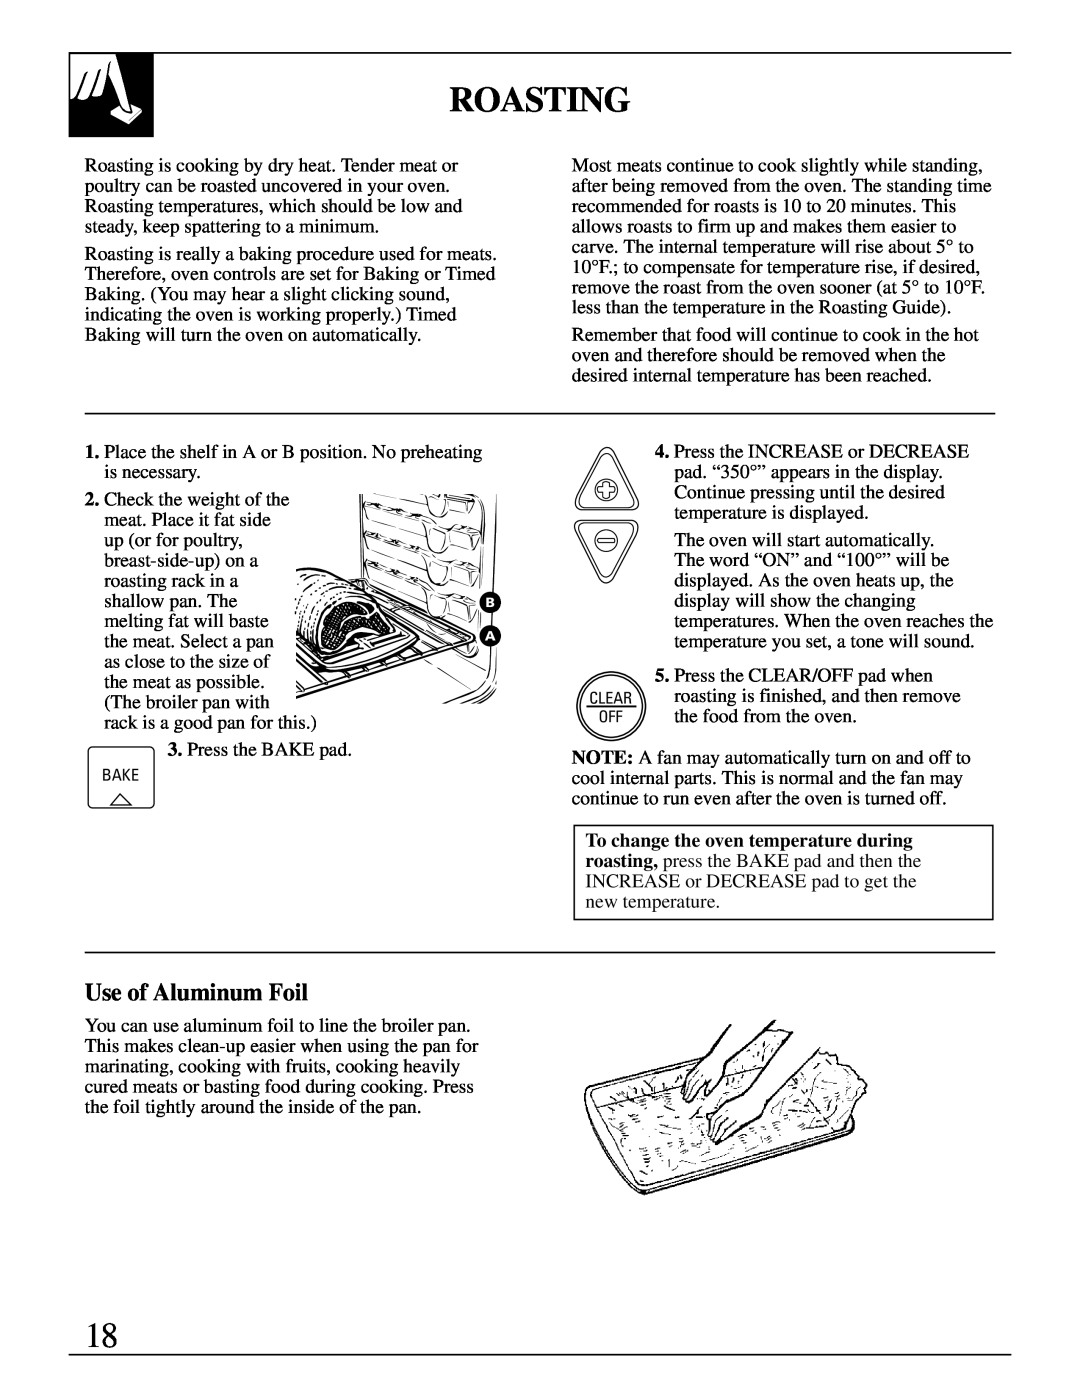 GE JDP37, JDP36 manual Roasting, Use of Aluminum Foil 